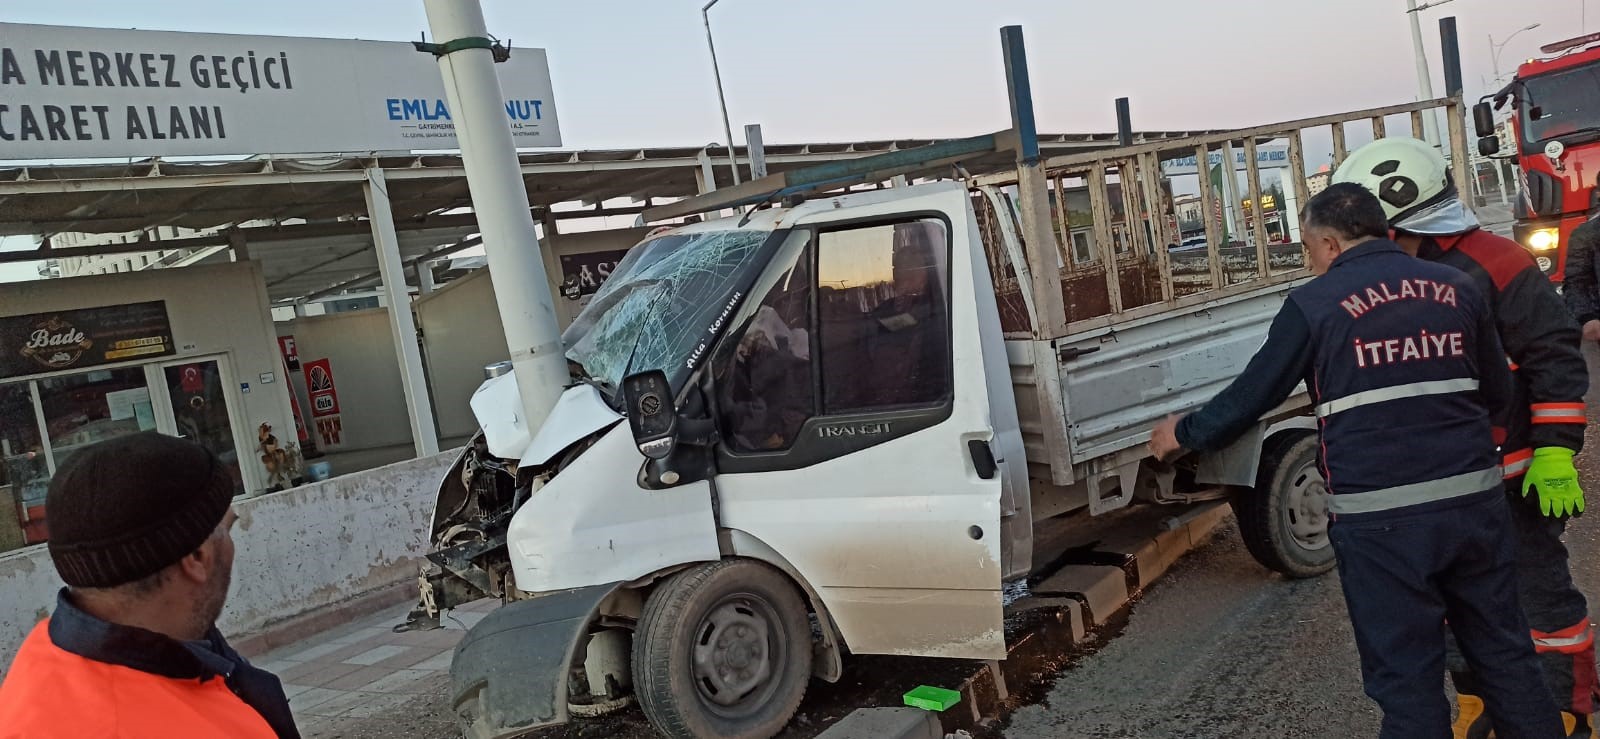 Malatya'da meydana gelen feci kazada sürücü ağır yaralandı